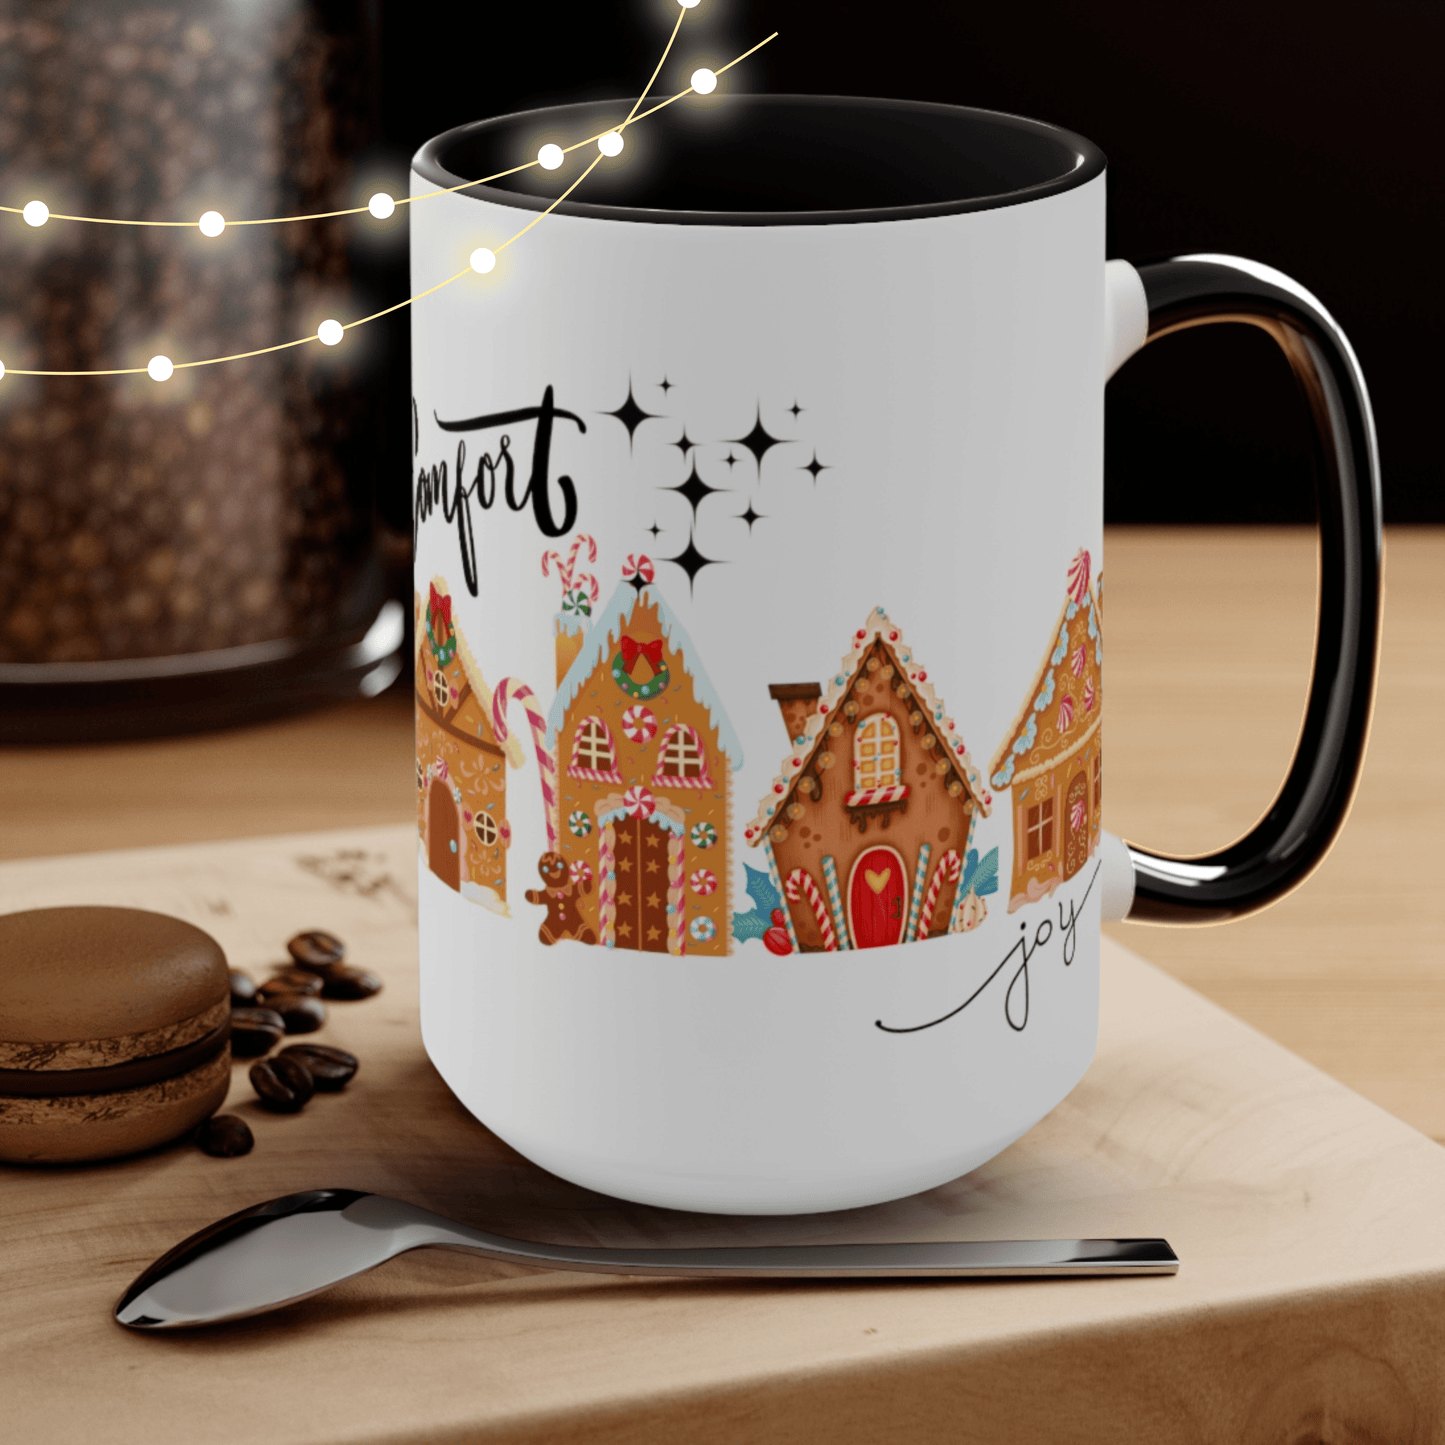 Comfort Joy Mug, Home Decor, Christmas Family Gift 15 oz Two-Tone Coffee Mugs